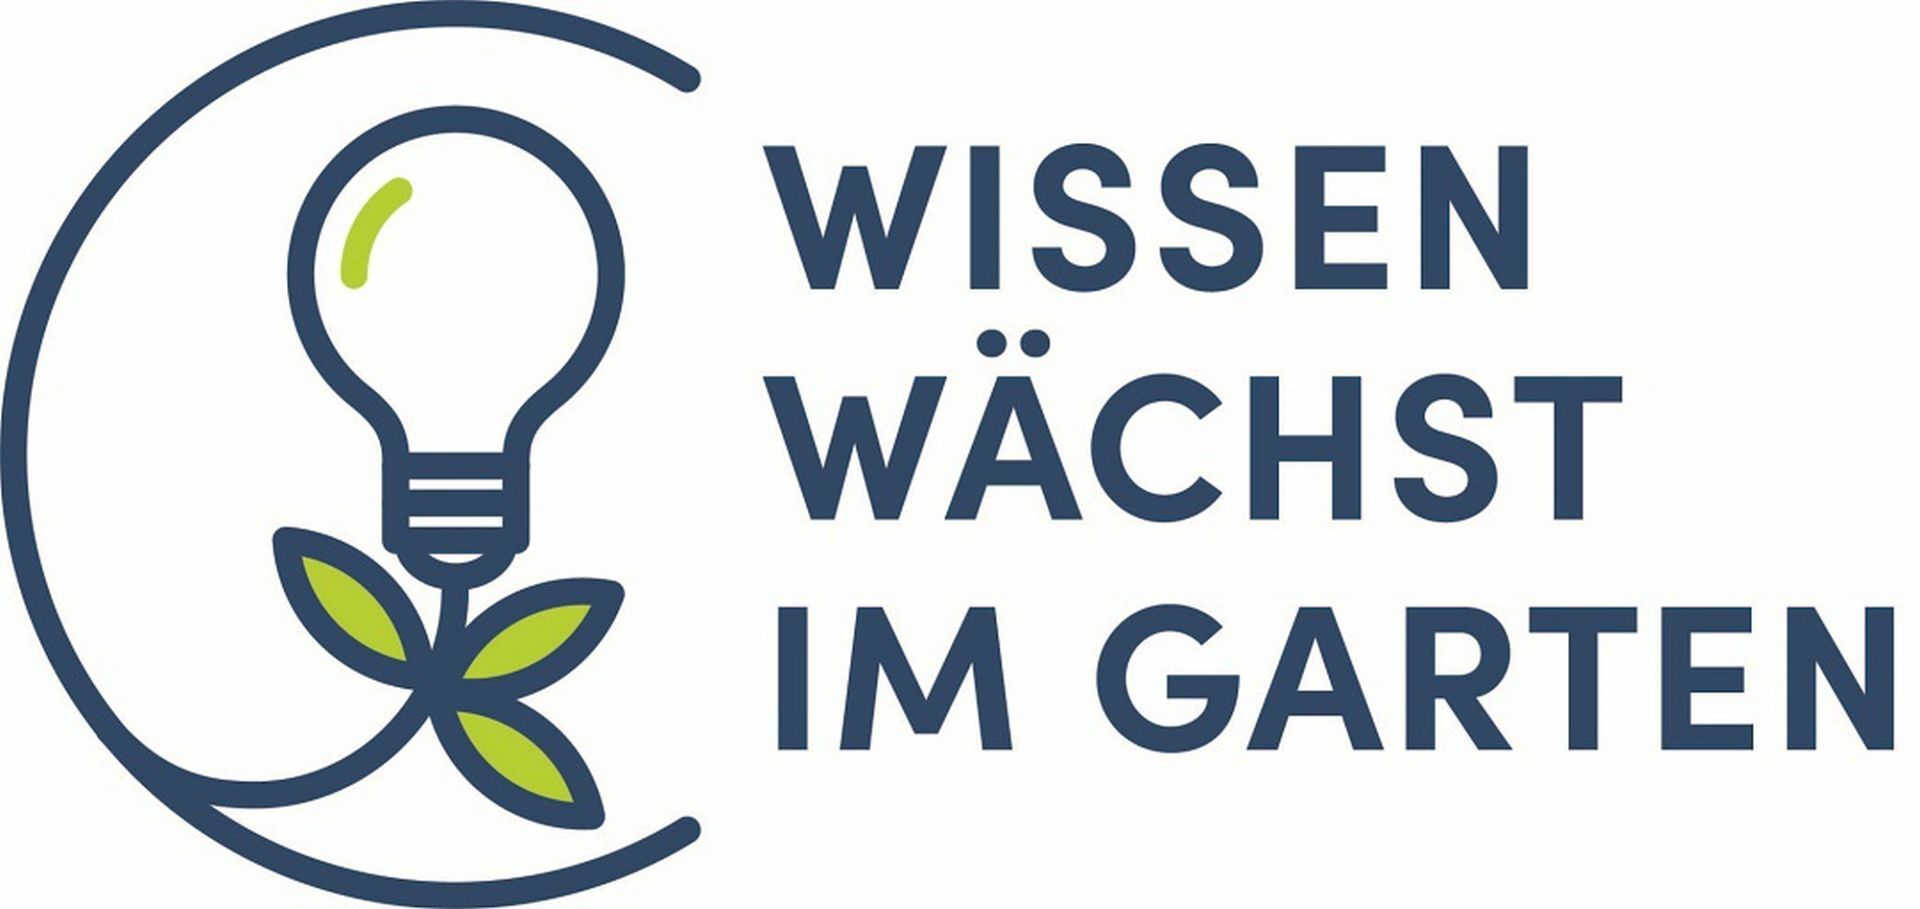 Logo von Wissenwächst im Garten